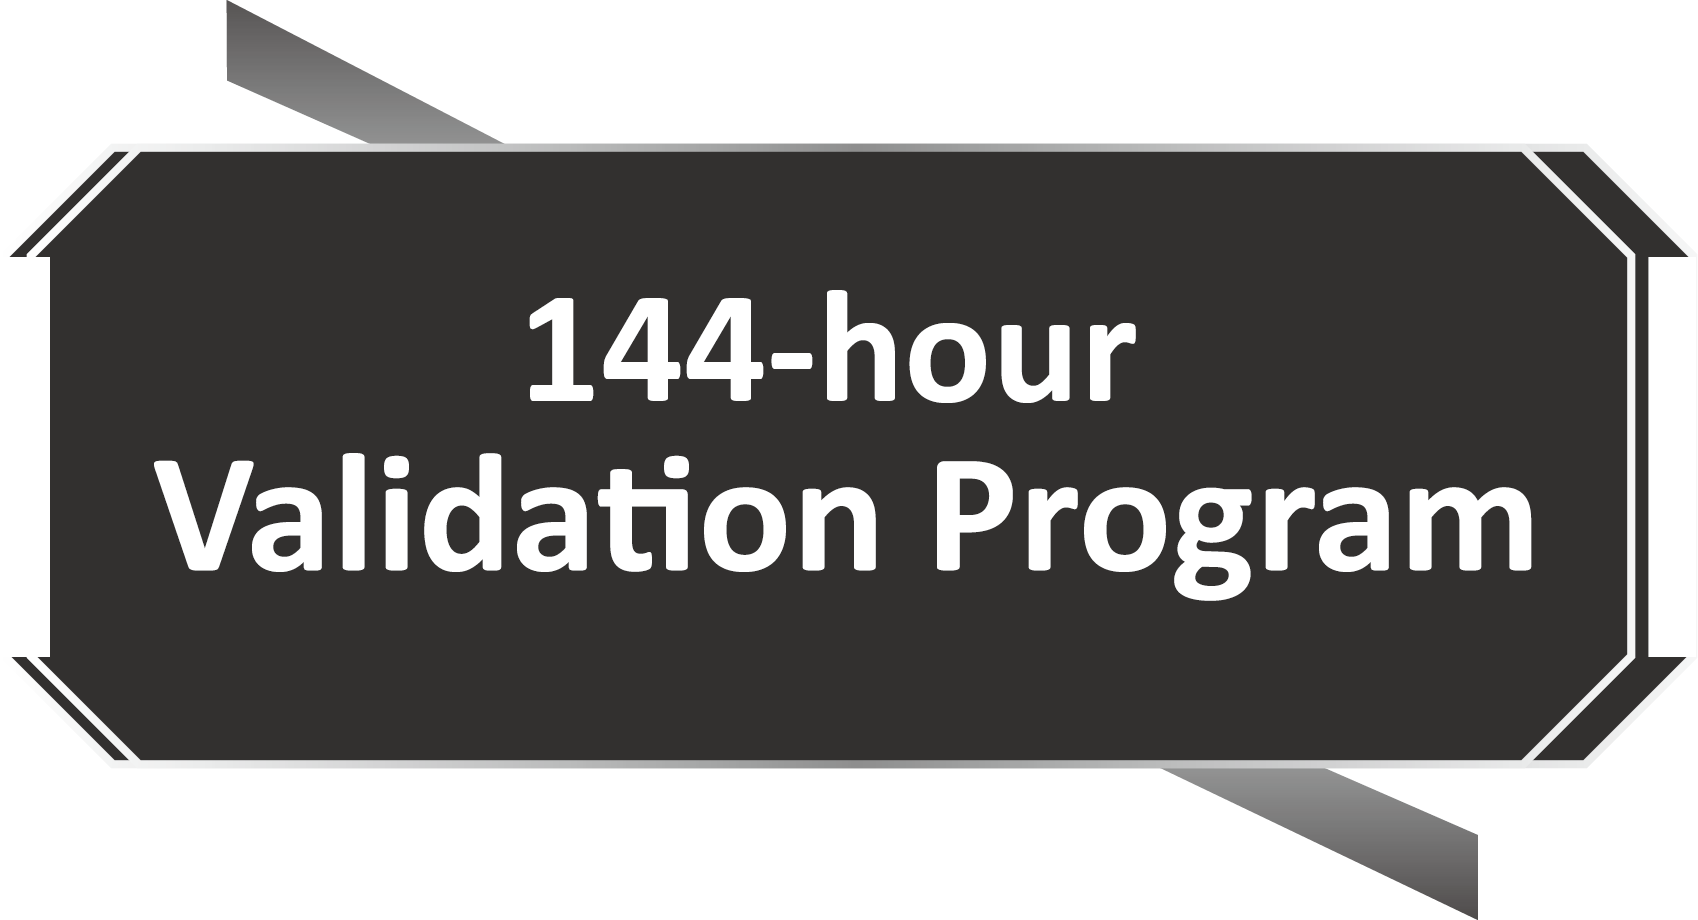 Selo do Programa de Validação de 144 Horas